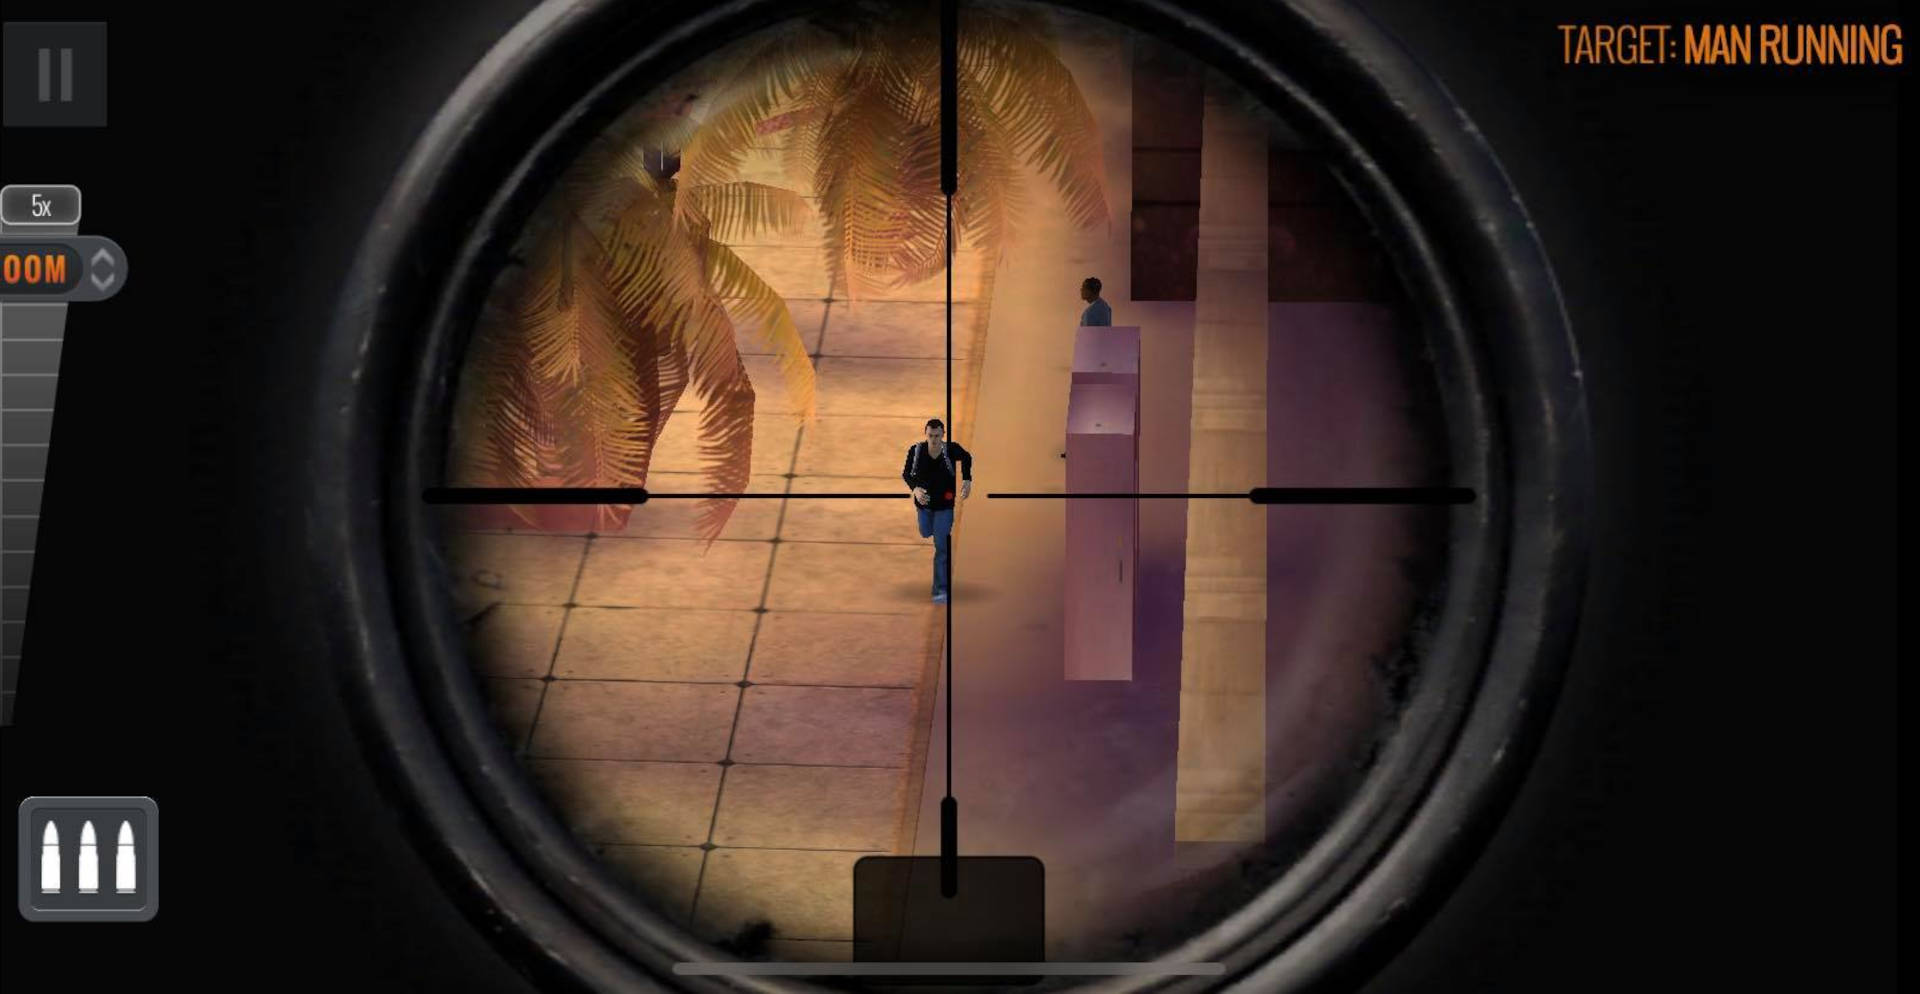 Luta de Snipers 3D - Jogo Gratuito Online